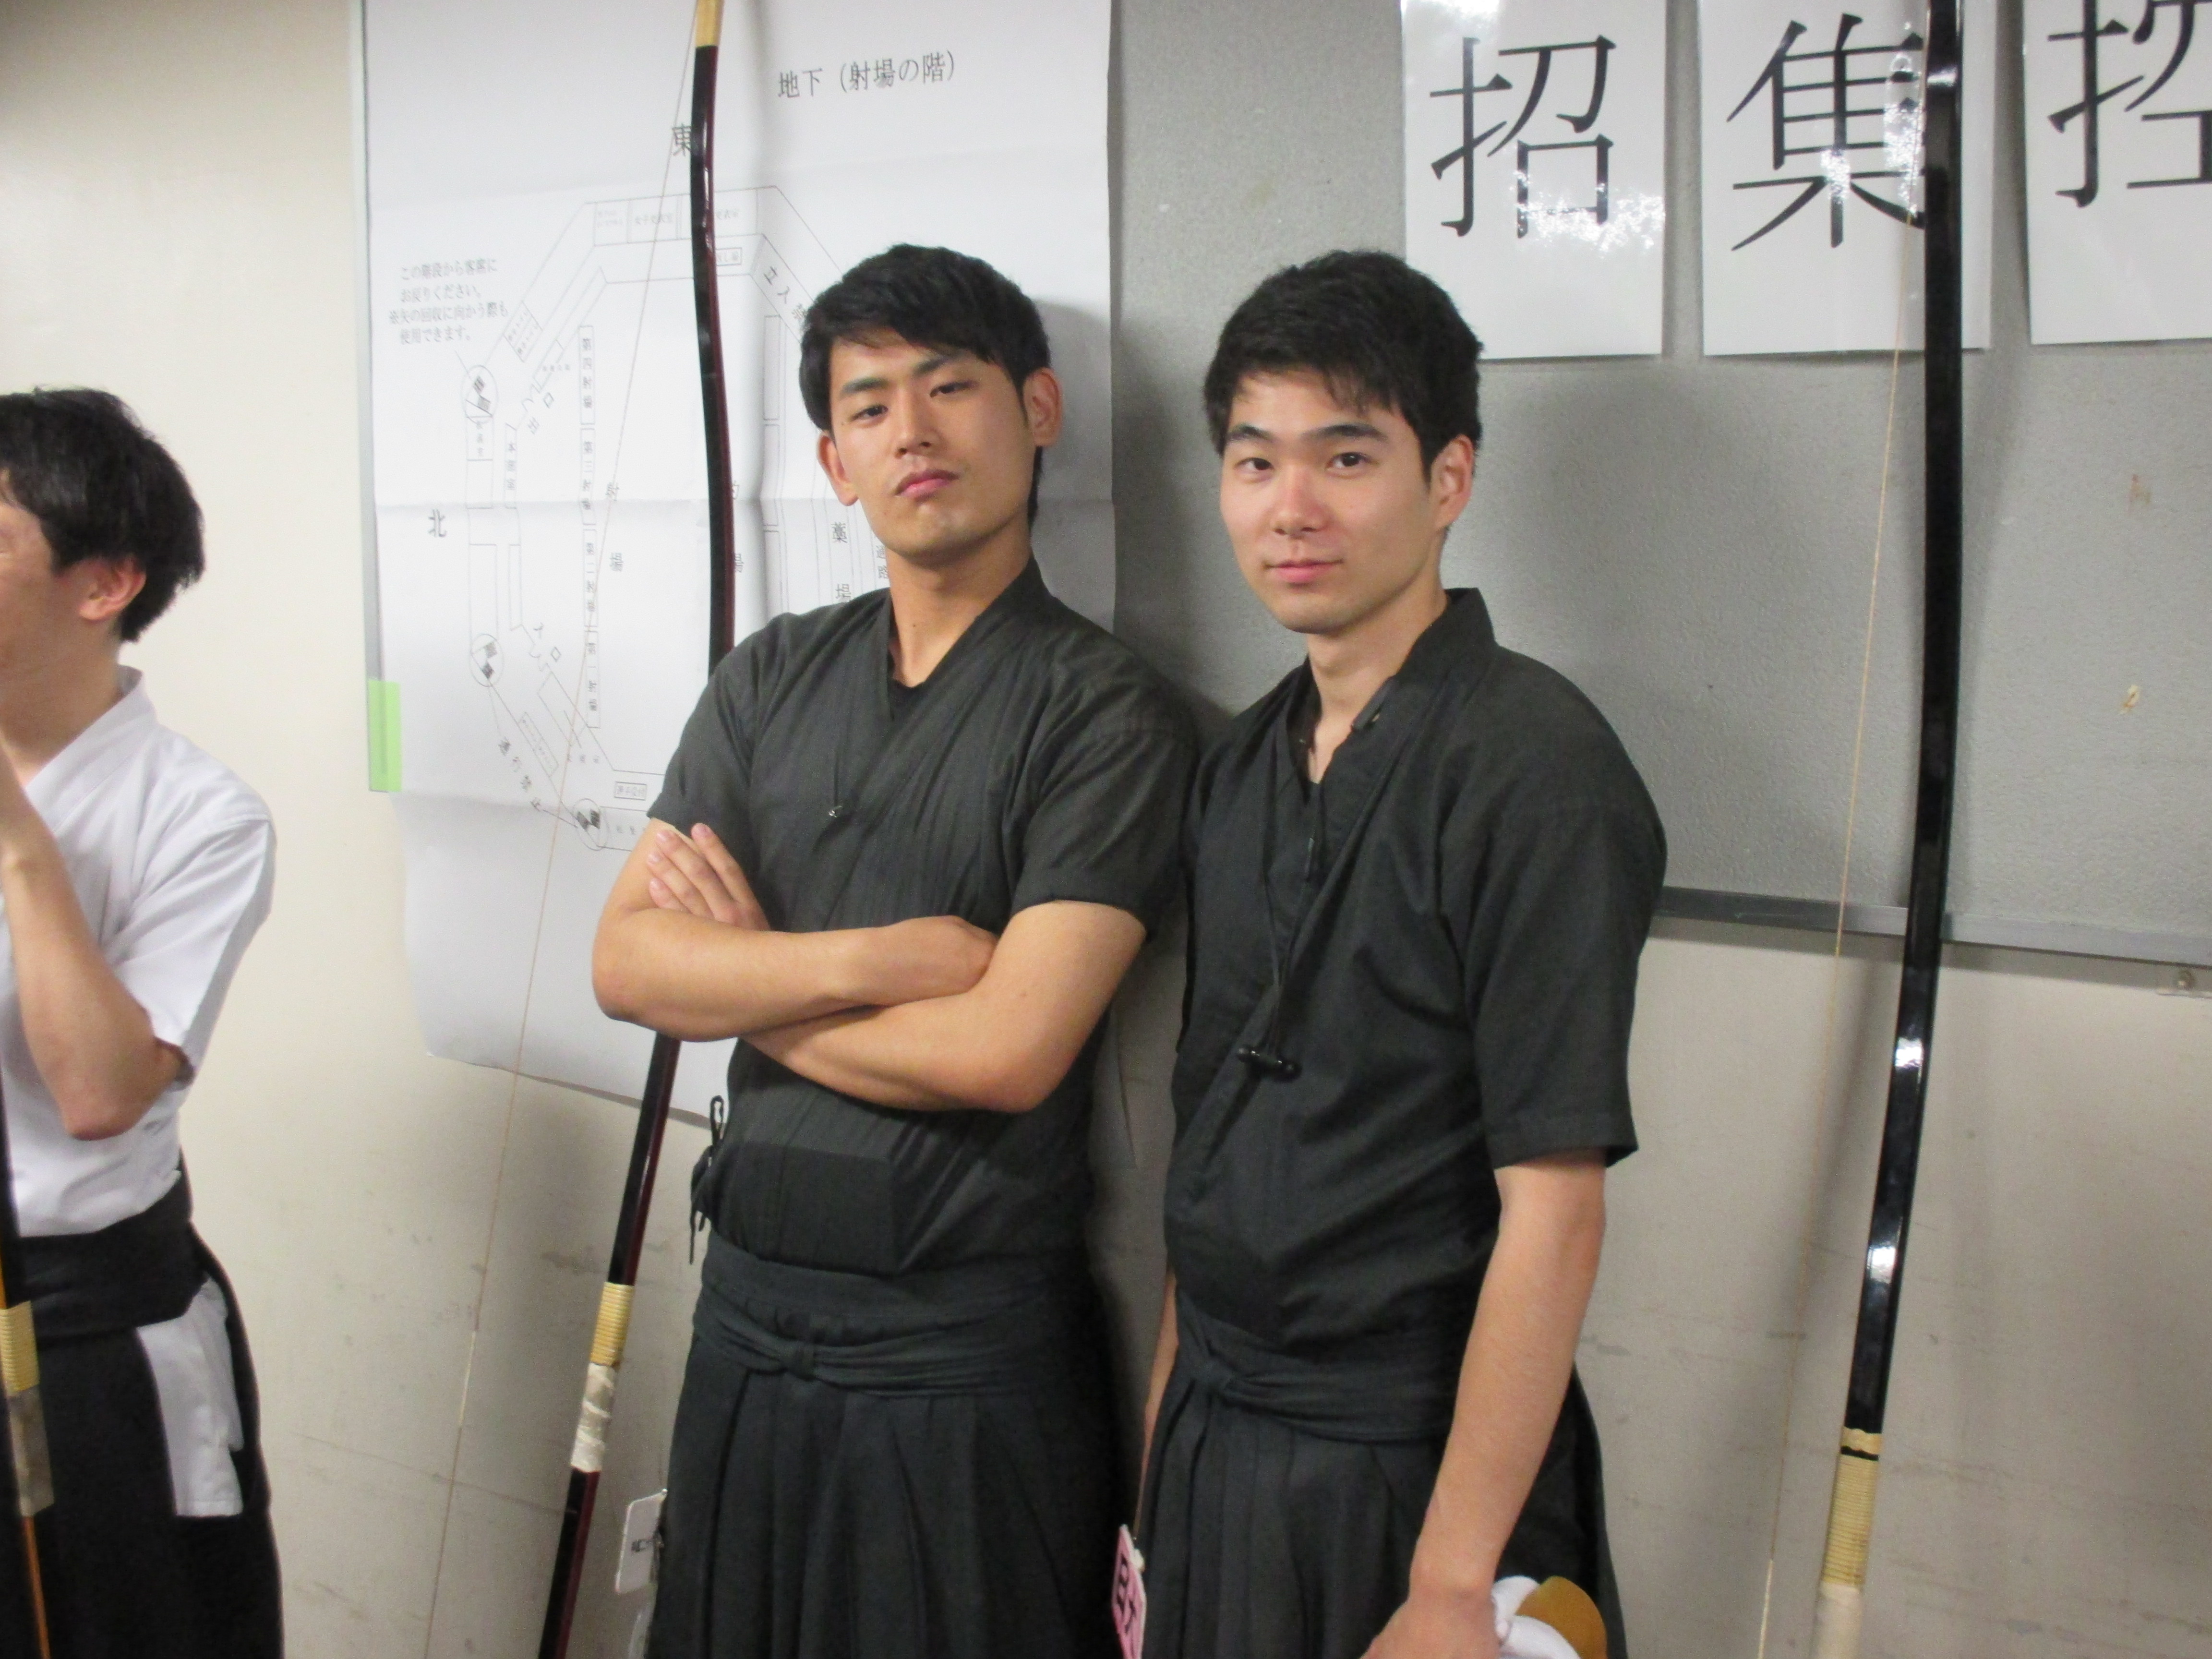 令和元年 第49回全関東学生弓道選手権大会 日本大学弓道部